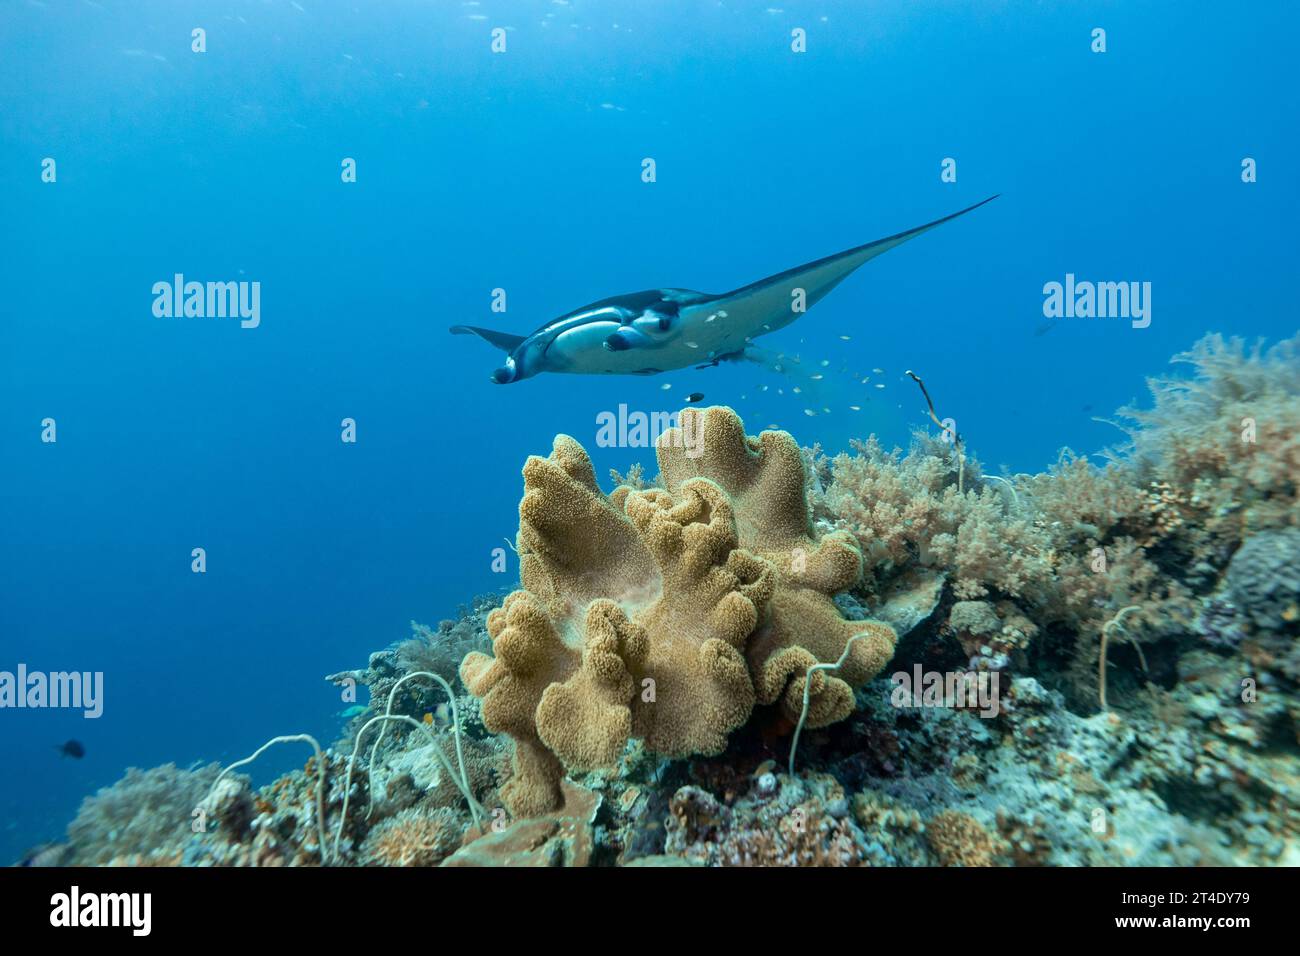 La raie Manta, Cephalopterus manta, déféque alors qu'elle glisse sur le récif corallien dans les eaux tropicales bleues claires Banque D'Images